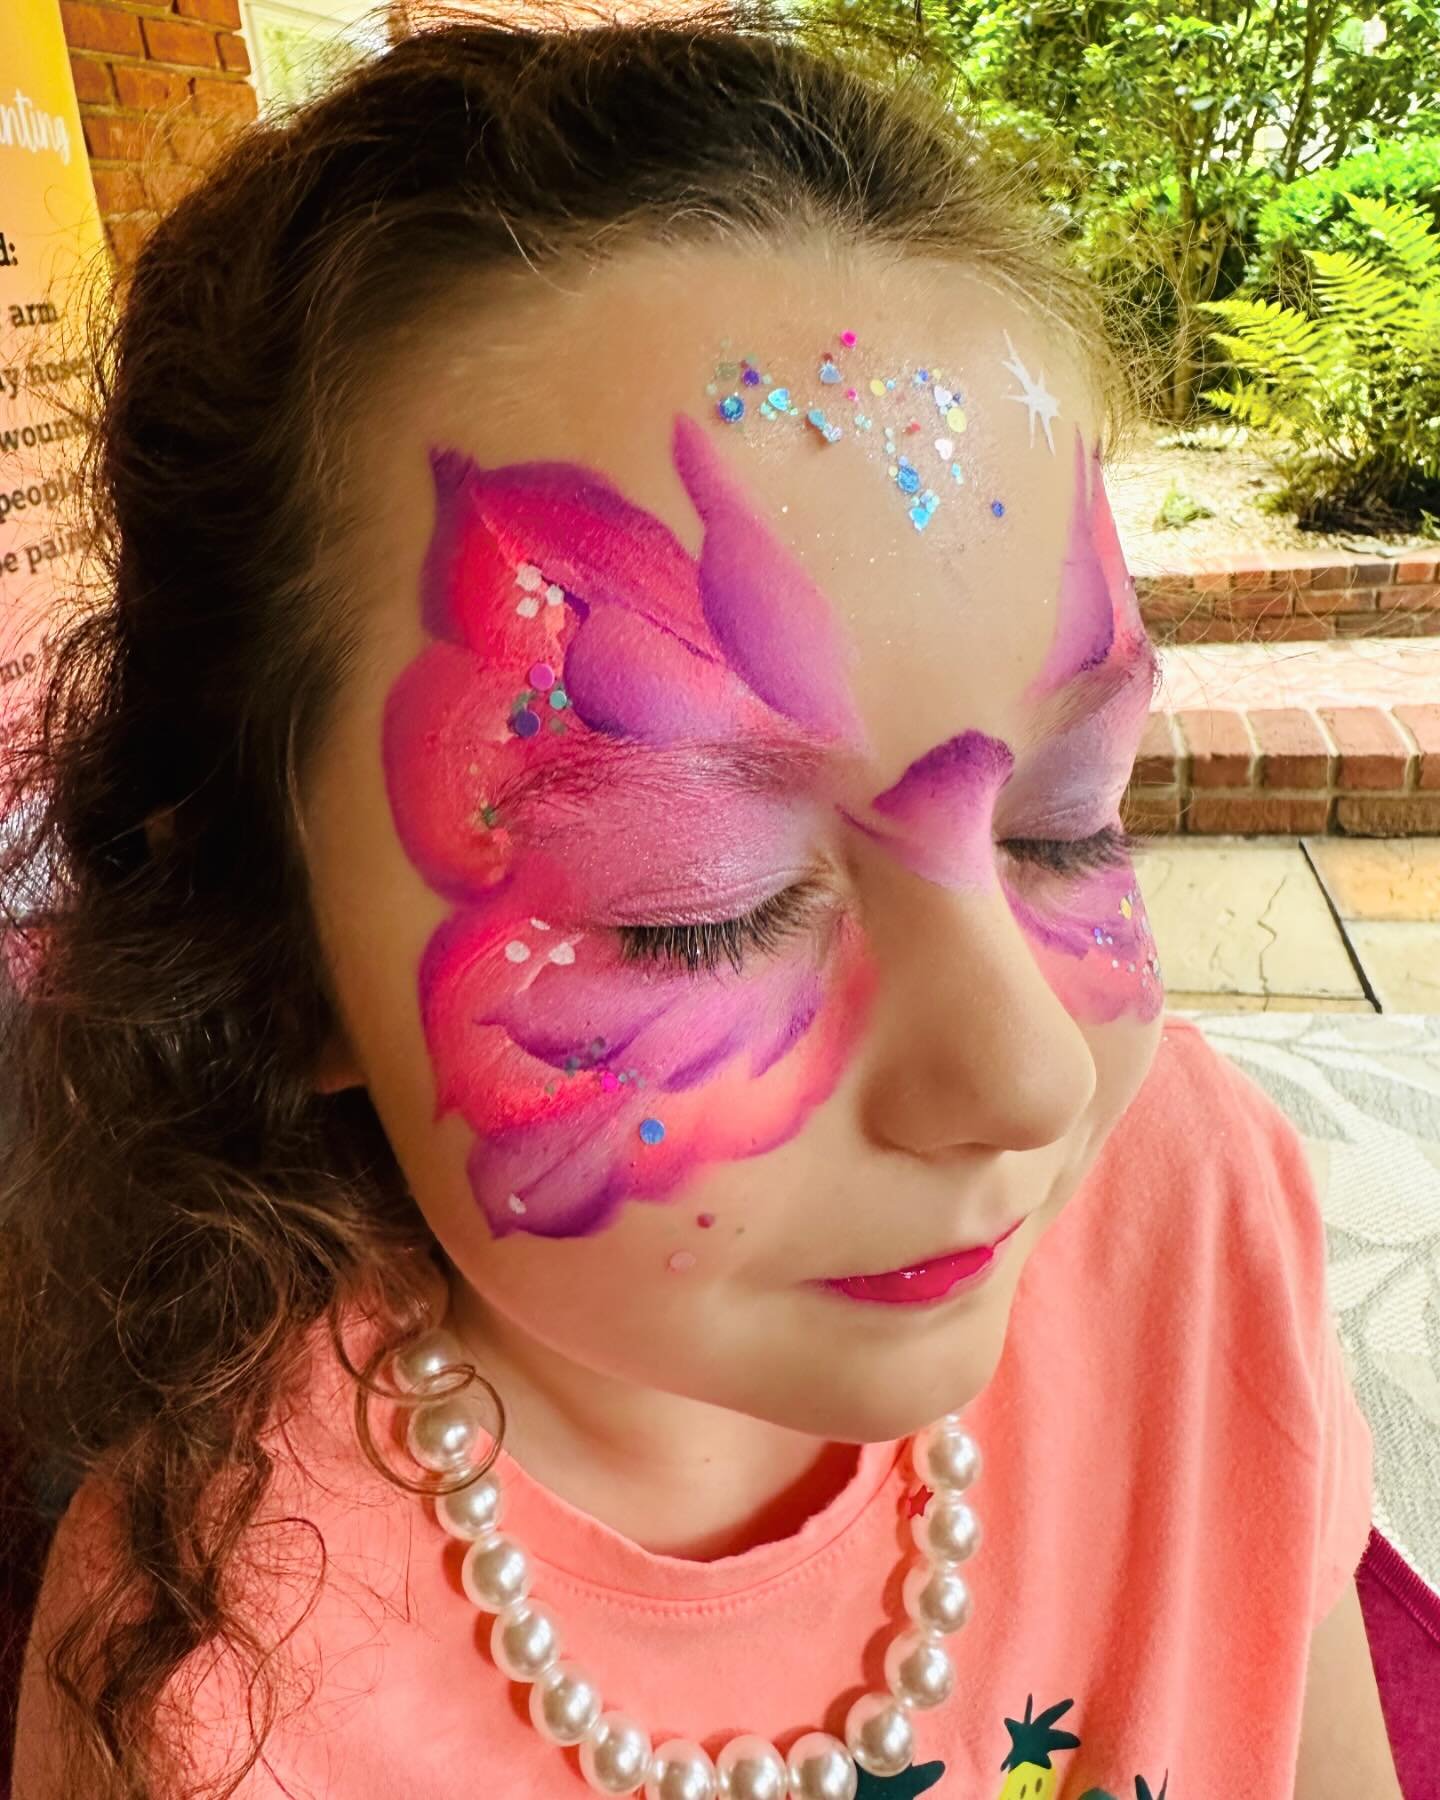 Butterfly face paint! 🦋 #butterflyfacepaint #butterflyfacepainting